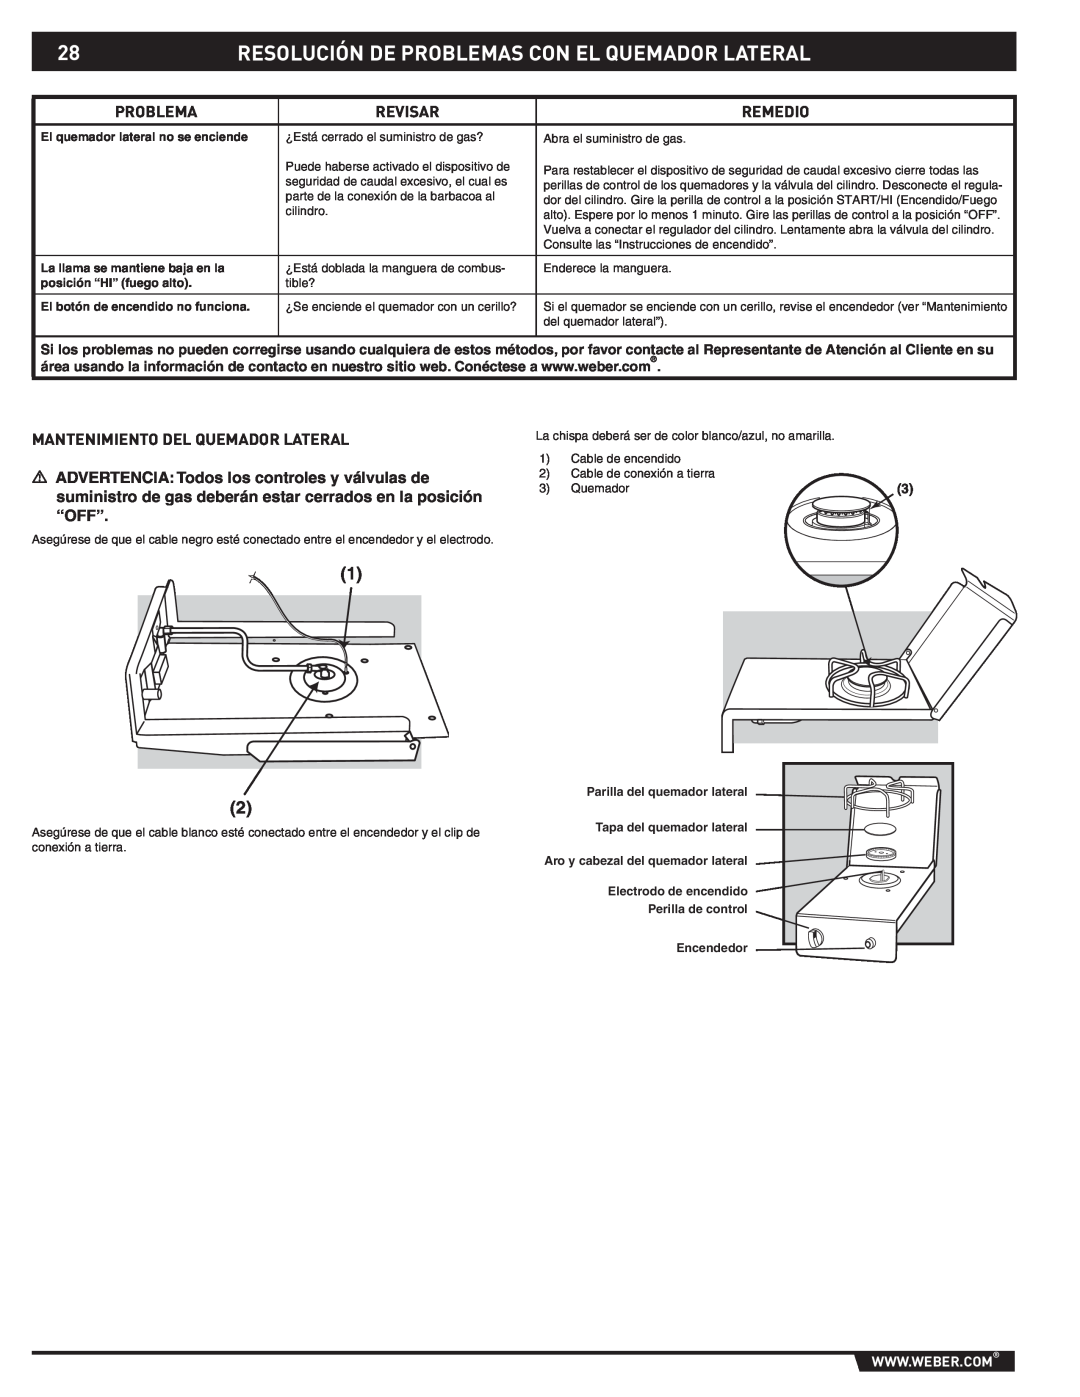 Weber 89796 manual Resolución De Problemas Con El Quemador Lateral, Revisar, Remedio, Mantenimiento Del Quemador Lateral 